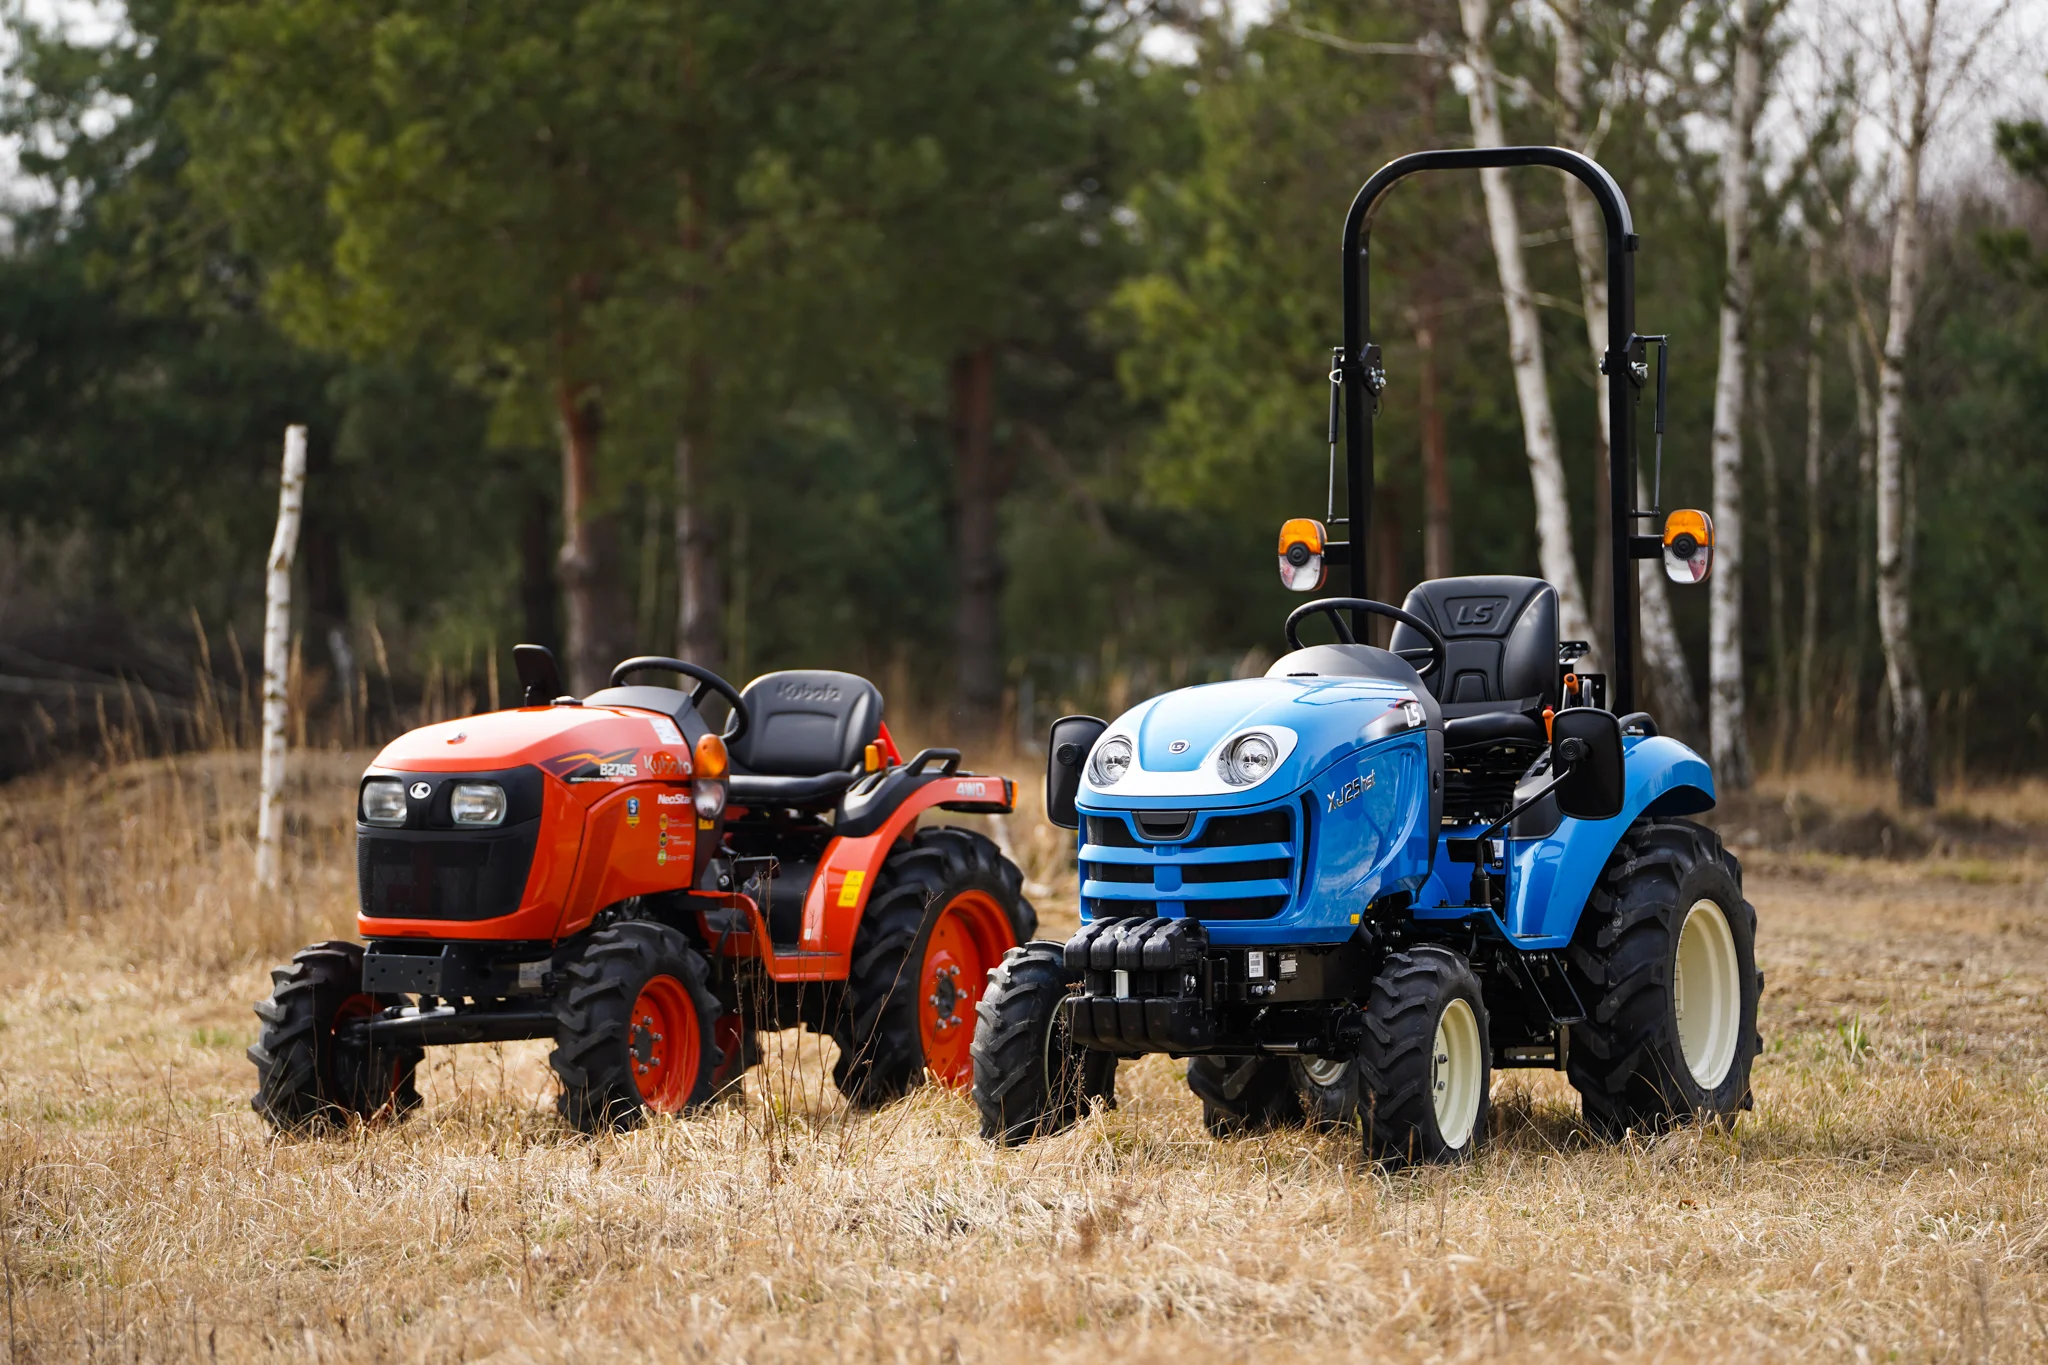 Tractores agrícolas Kubota frente a los nuevos tractores LS